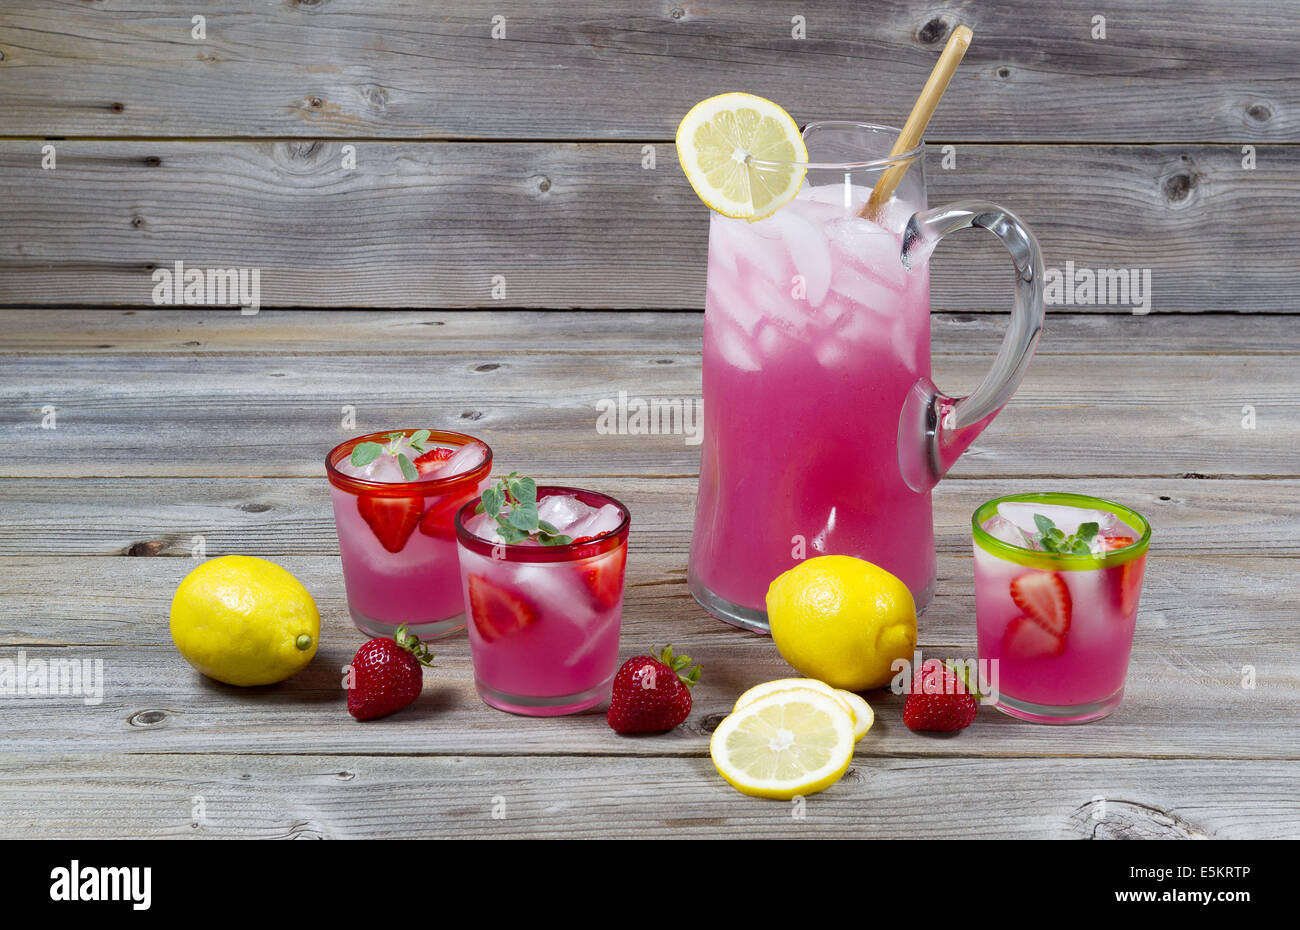 Vue de face de la limonade rose fraîchement faite avec des citrons entiers, les fraises et les verres remplis sur bois rustique Banque D'Images